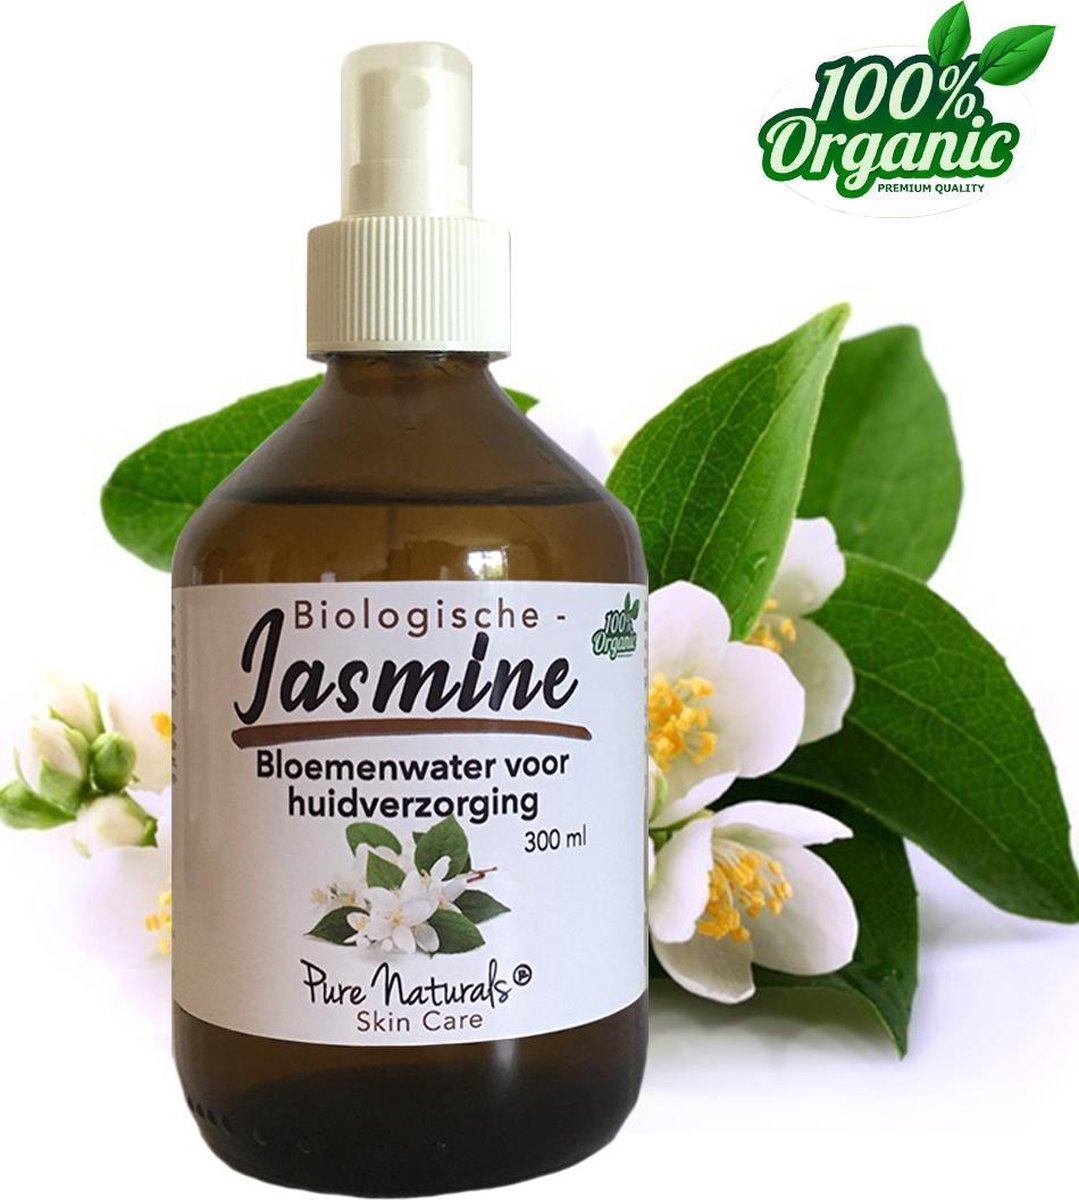 Jasmijn Bloemen water 300 ml | Jasmin Hydrolaat | 100% Puur | Biologisch | Roomspray | Bodyspray | Gezichtstonic | Gezichtsreiniging tonic | Huidverzorging | Pure Naturals